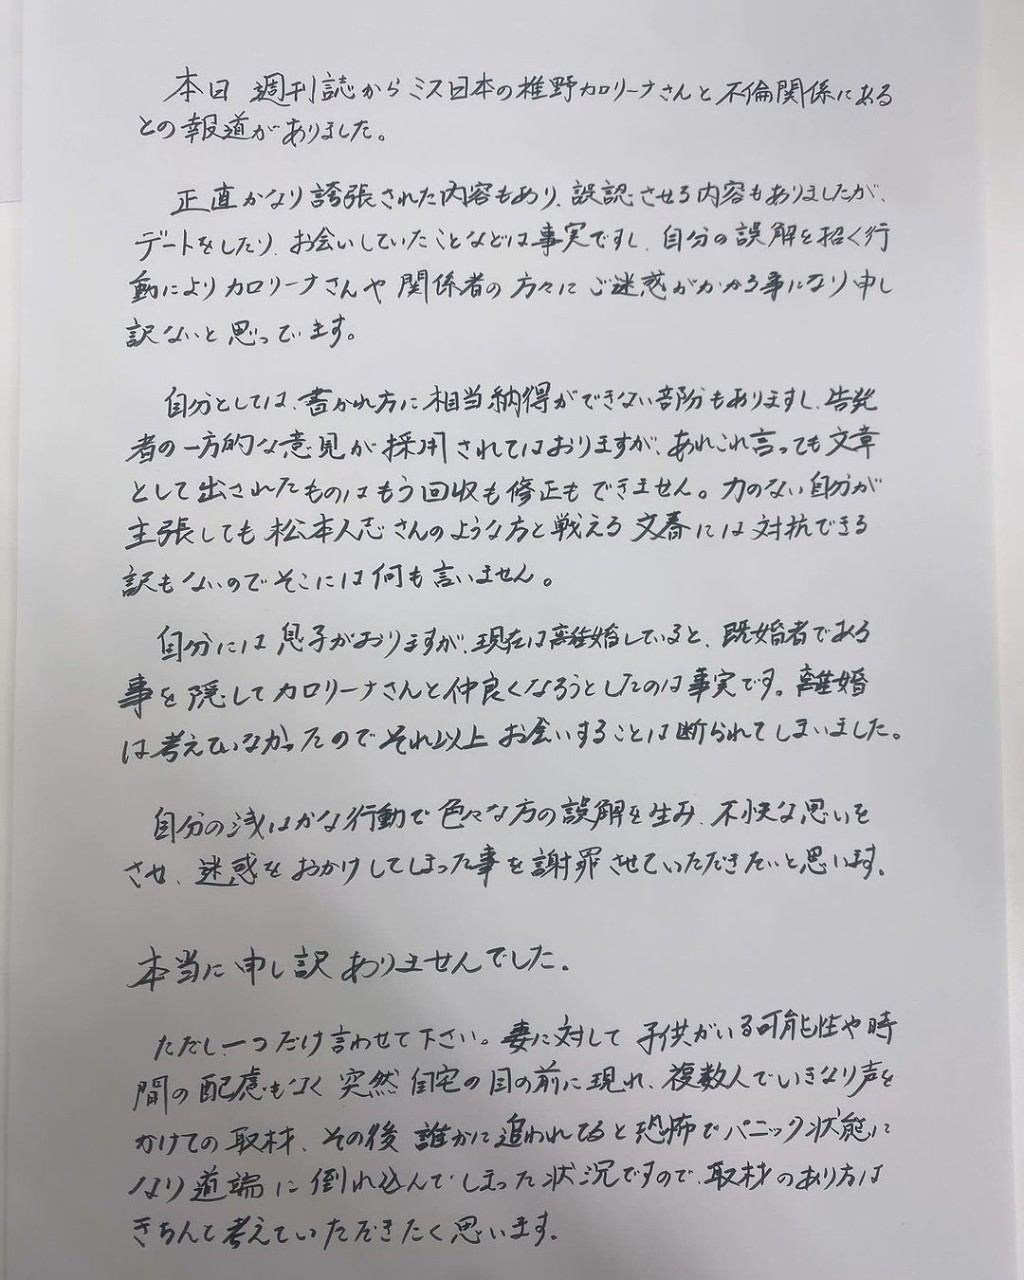 前田拓摩在个人的IG发布道歉信。 IG